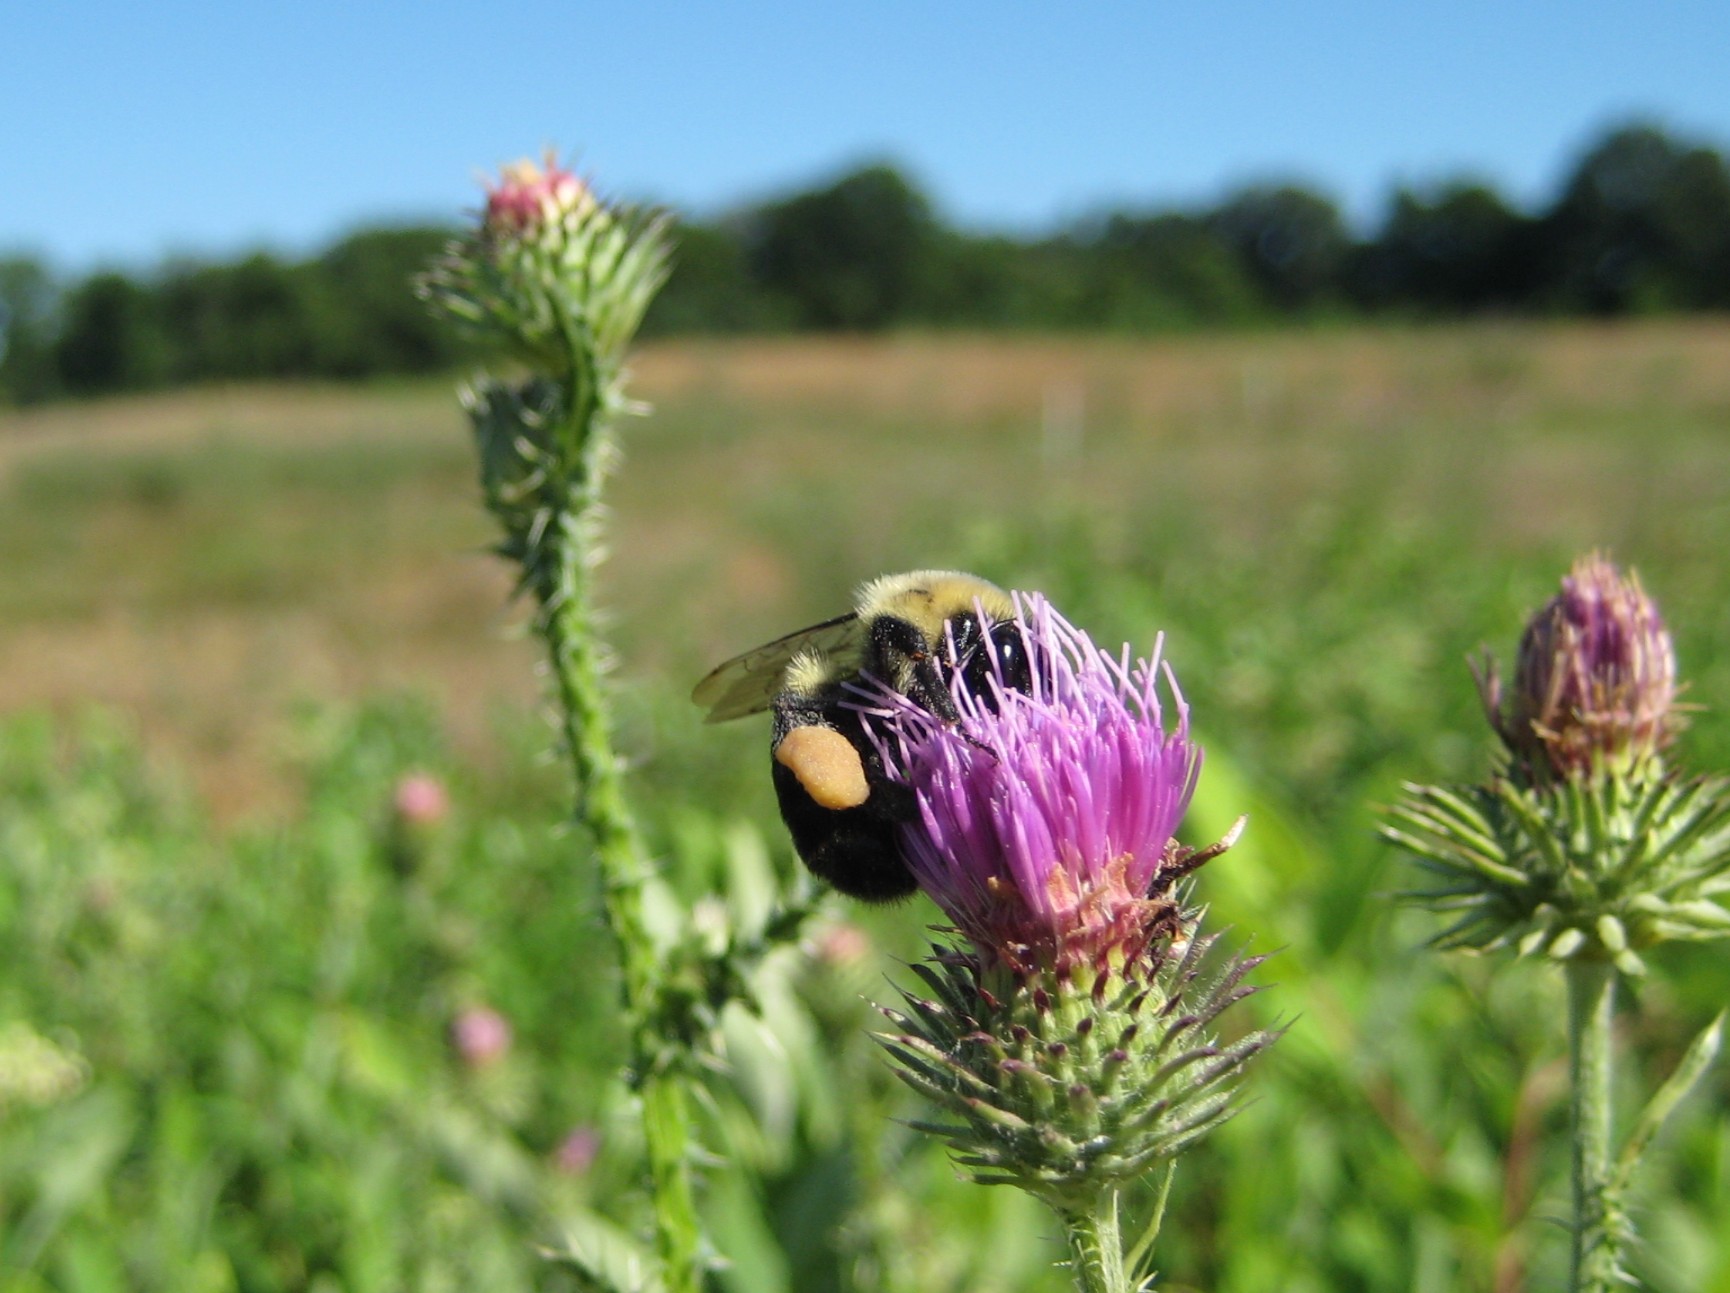 Managing Landscapes for Pollinators